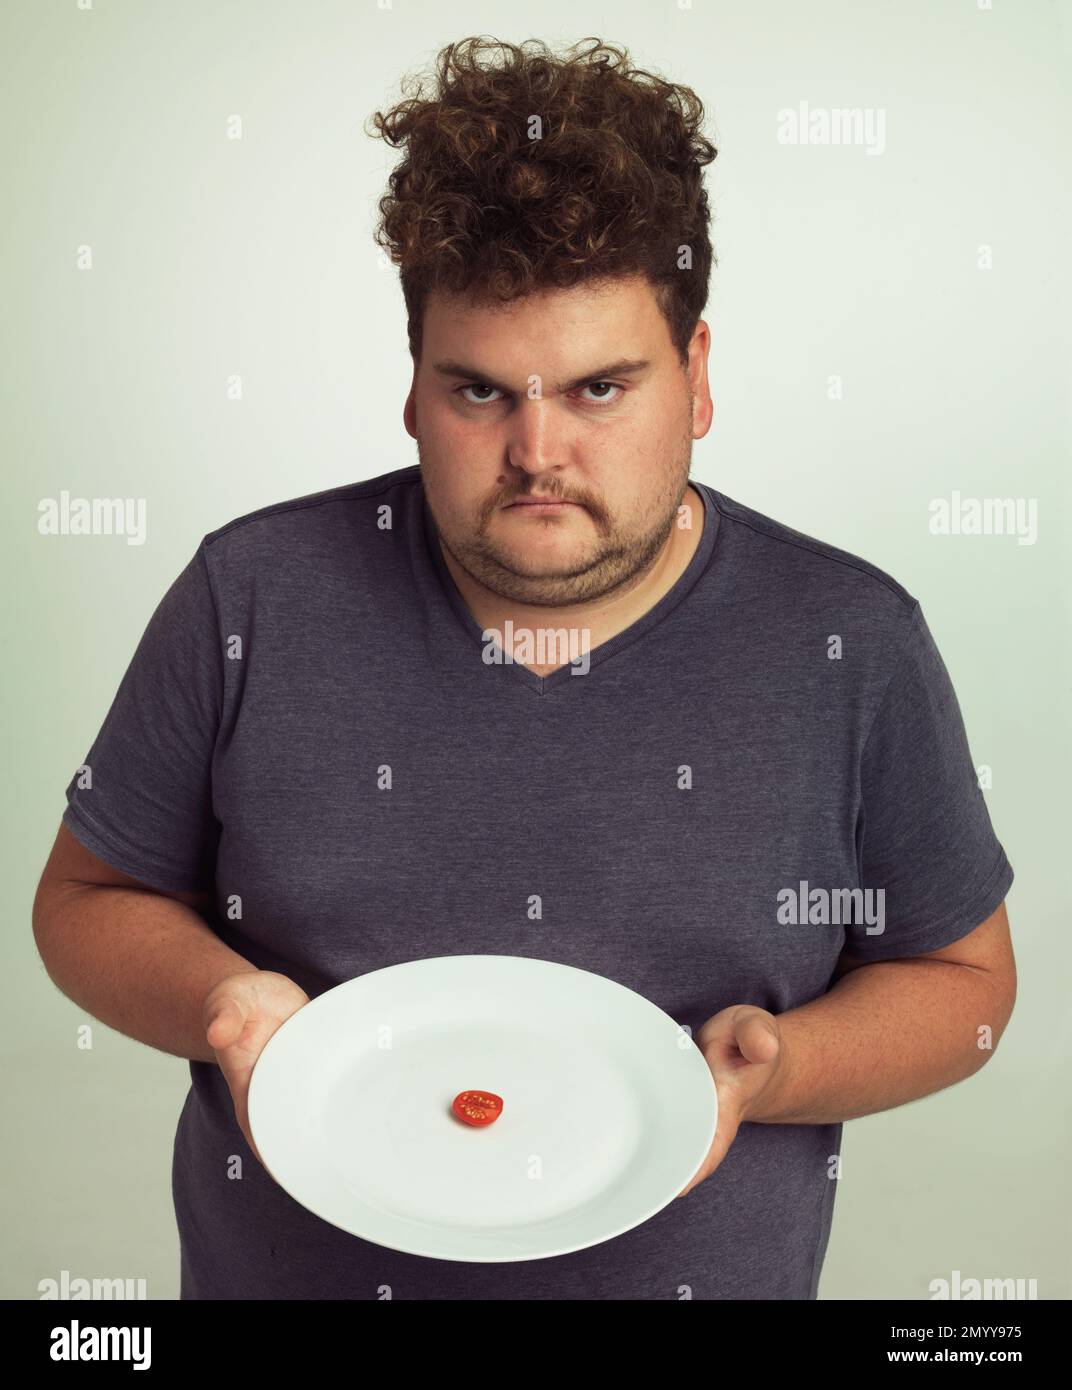 Wo ist der Rest meines Burgers? Porträt eines übergewichtigen Mannes, der einen Teller mit einem kleinen Stück Tomate hält. Stockfoto